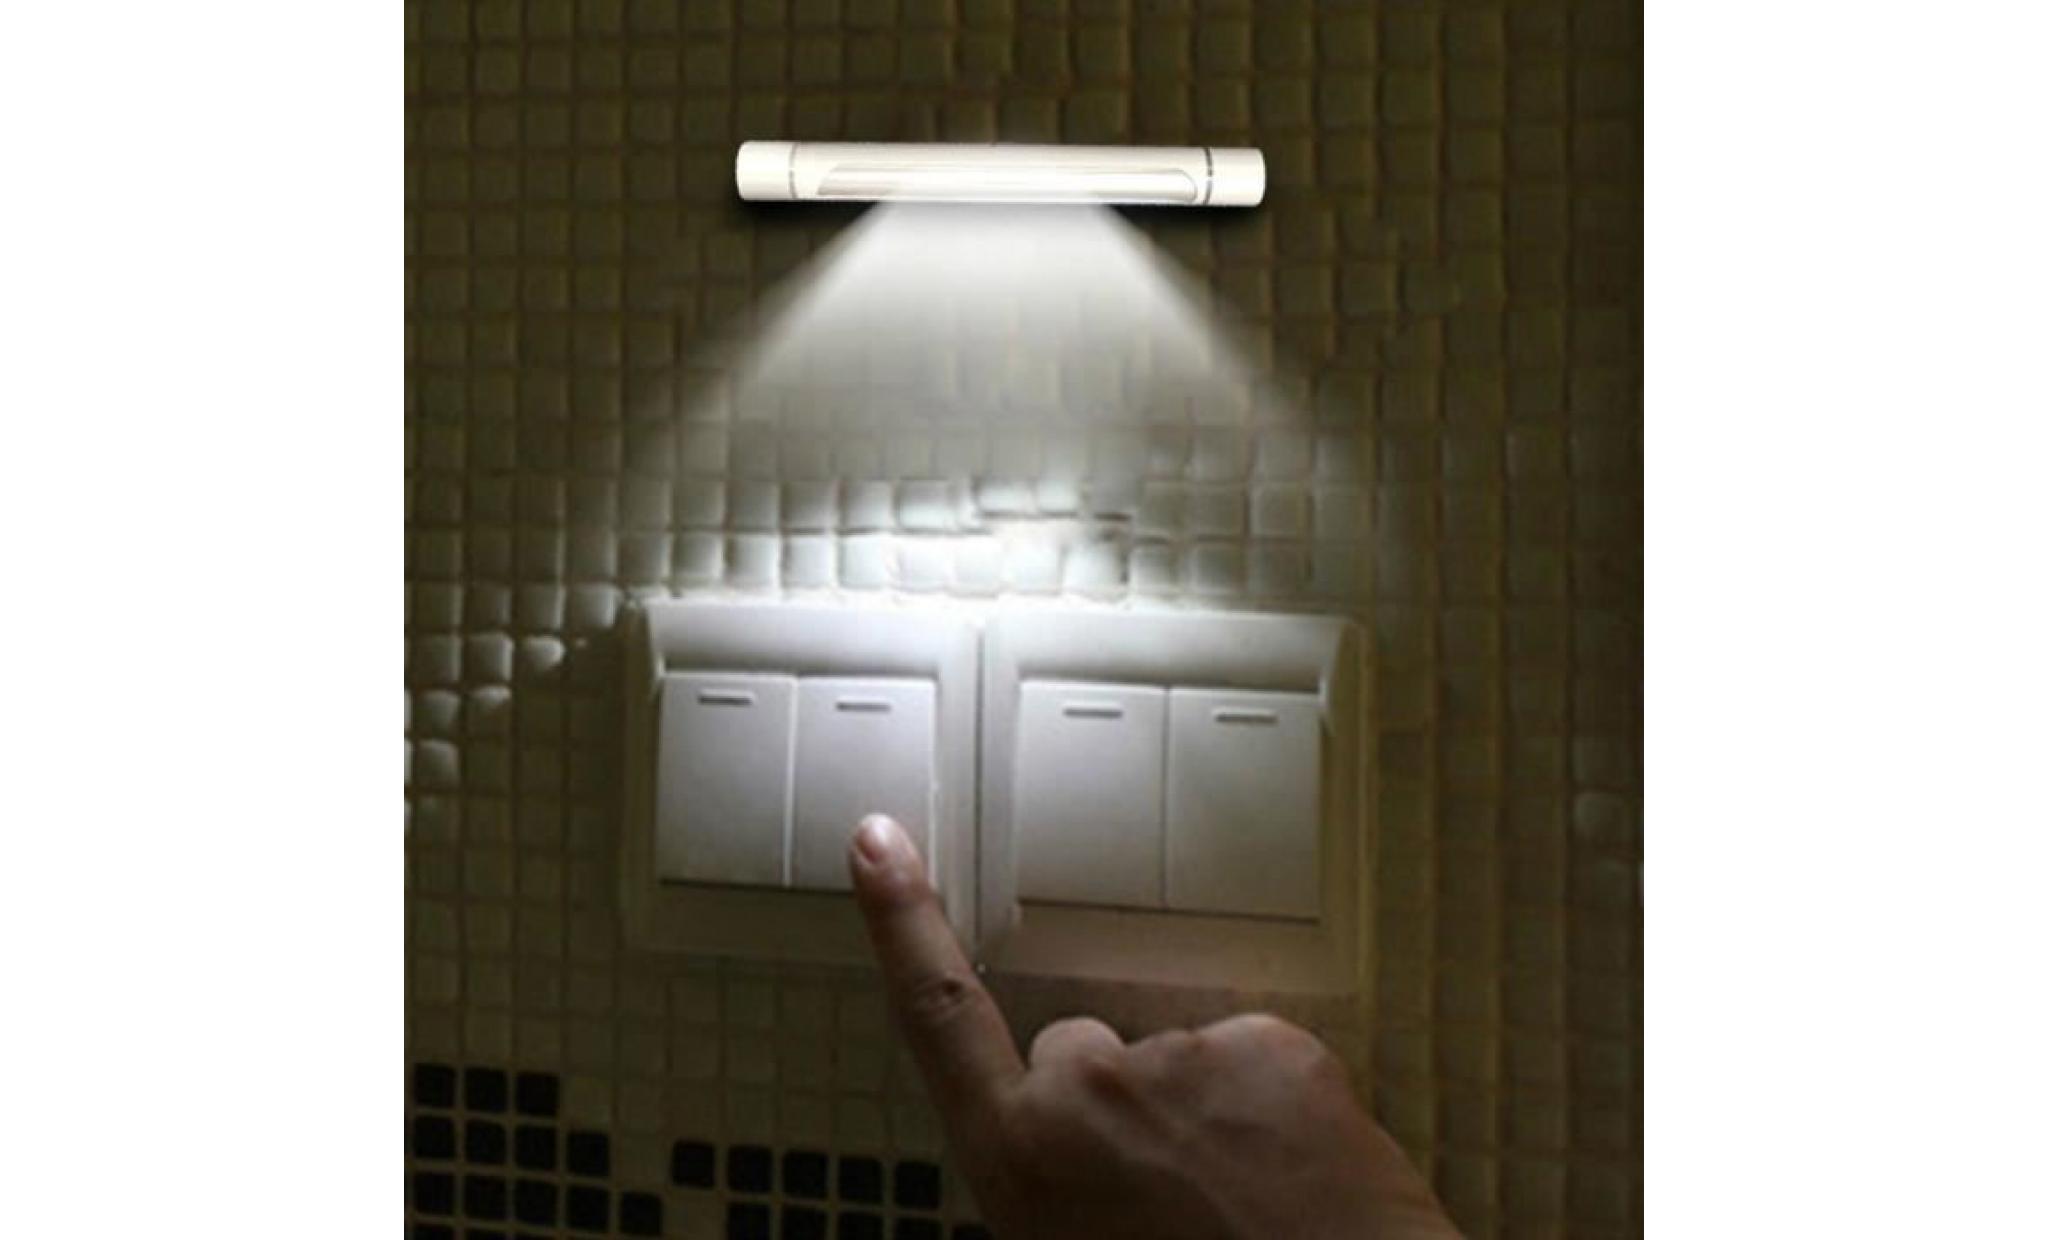 27cm sous l'armoire armoire étagère lampe lumière de bande pour la maison cuisine wall light @zoozipo1932 pas cher